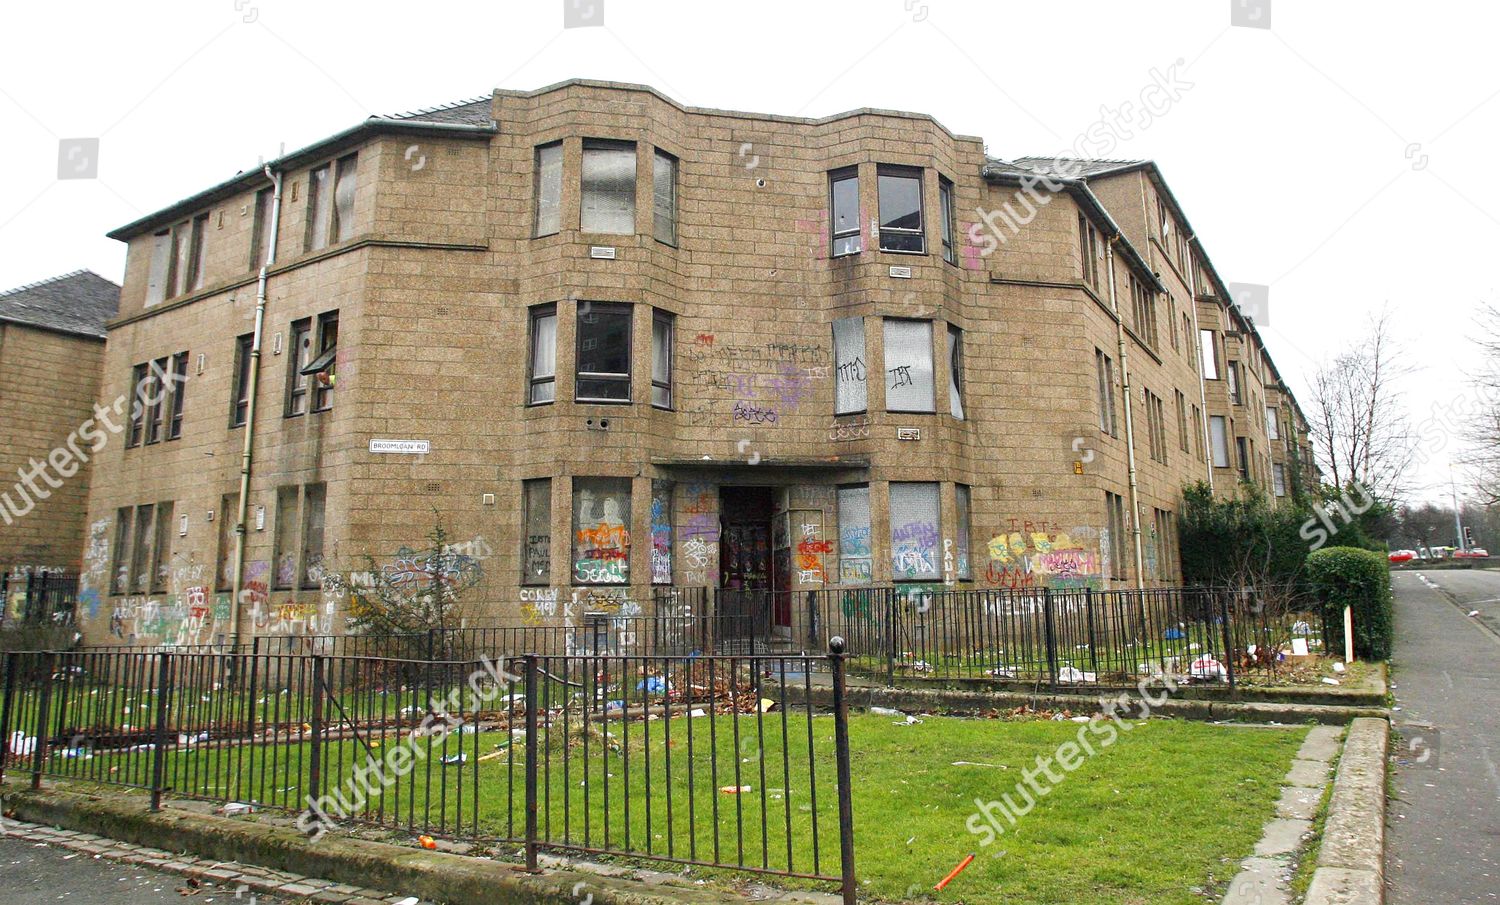 Glasgow council estate